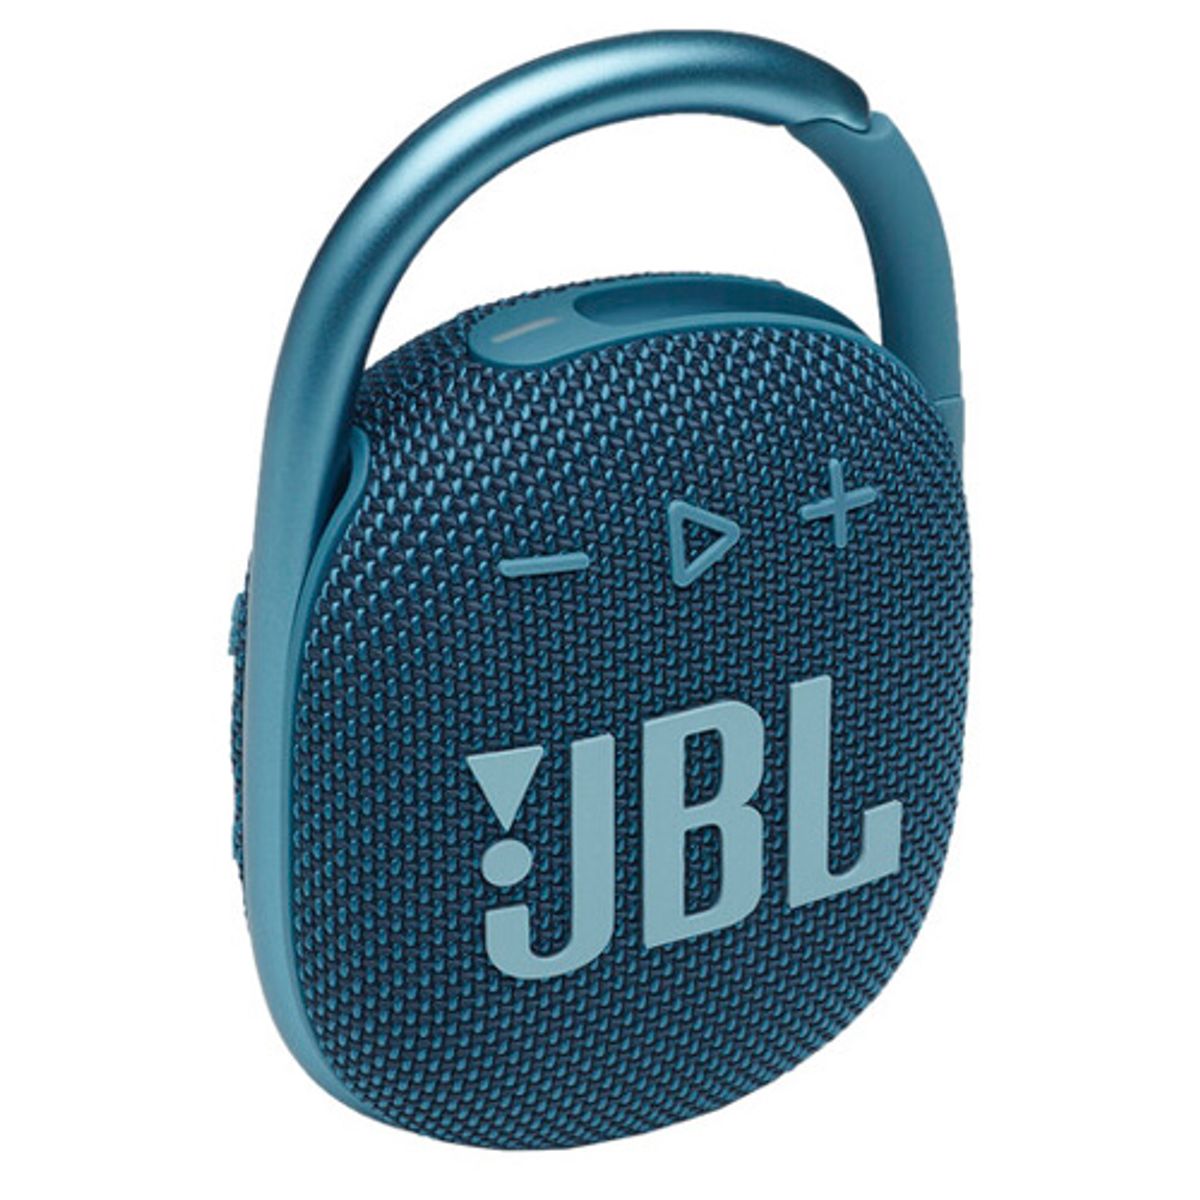 Caixa de Som Portátil JBL Clip 4 Bluetooth 5W À Prova D'água e Poeira IP67 Azul